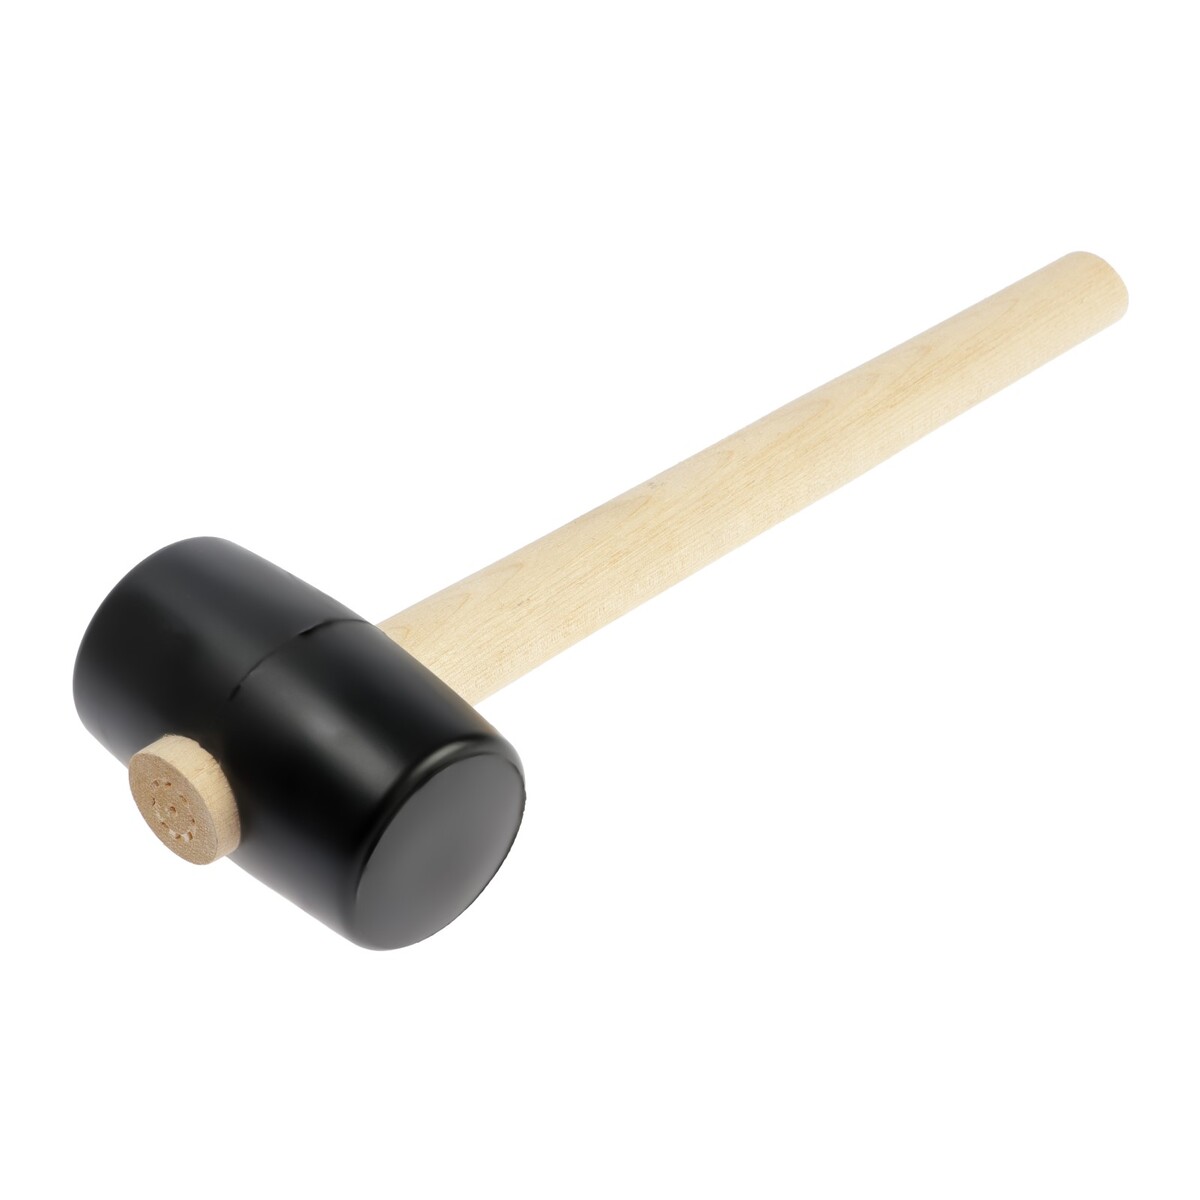 Киянка лом, деревянная рукоятка, черная резина, 55 мм, 300 г киянка лом деревянная рукоятка черная резина 65 мм 500 г